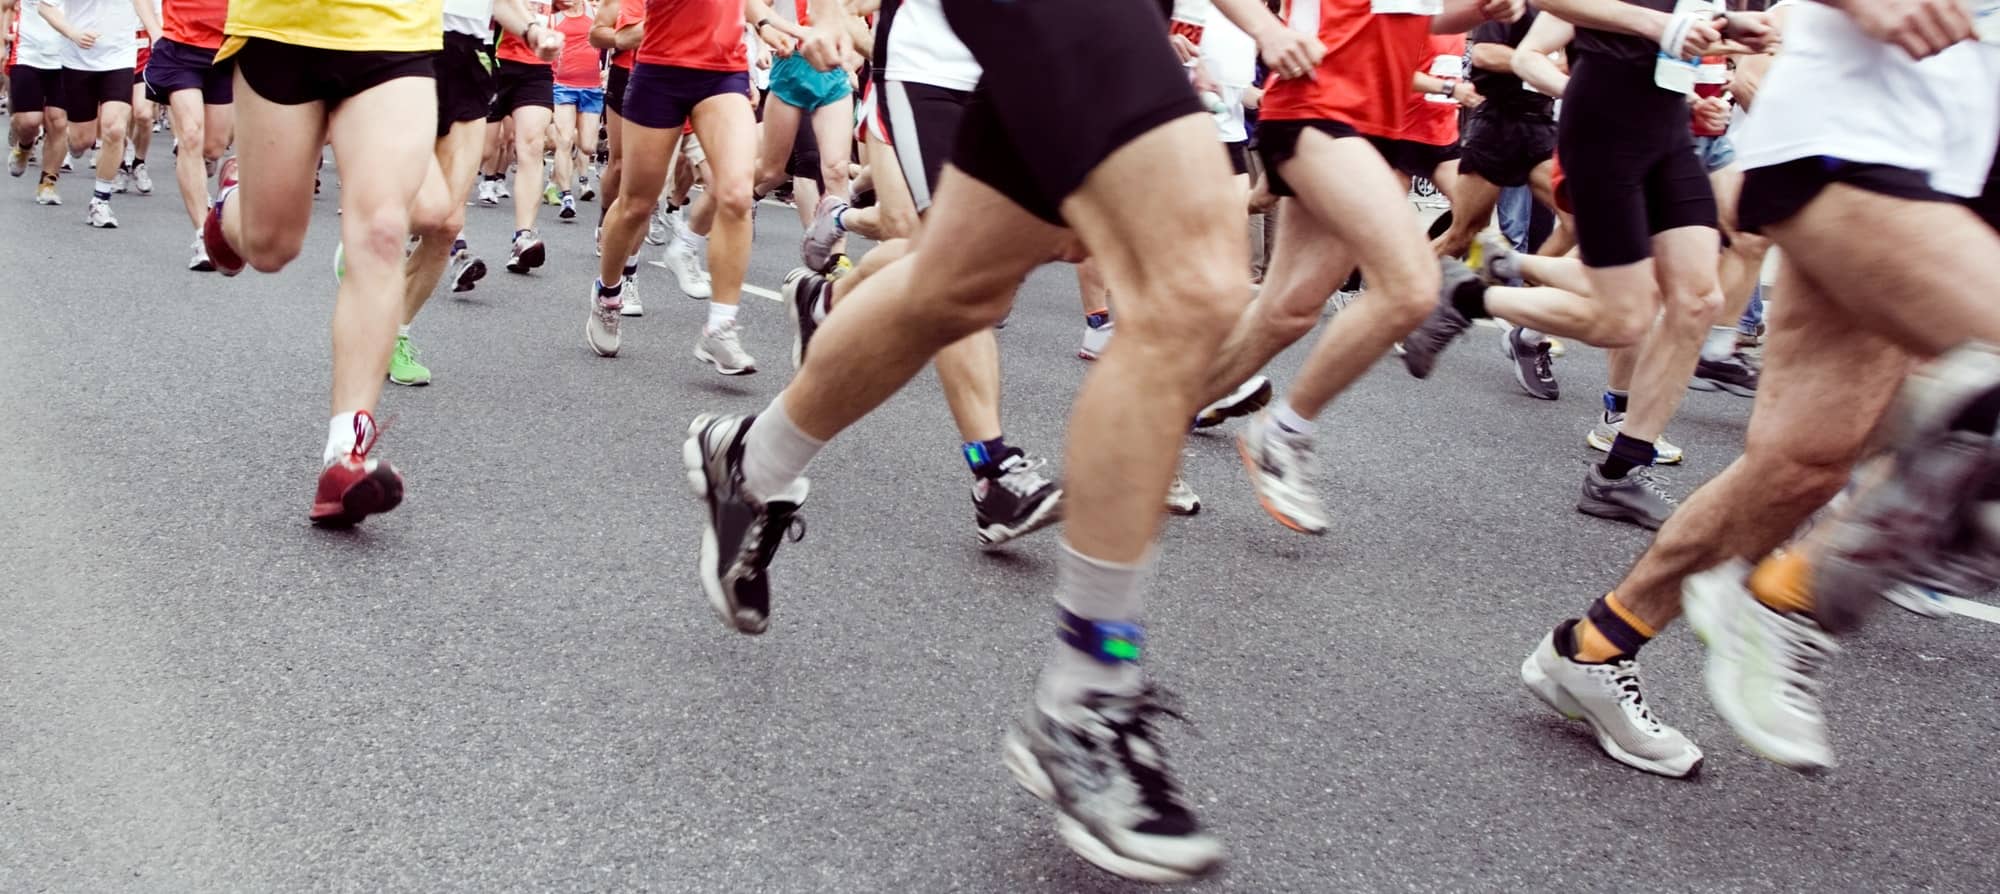 Marathon runners on the run in city